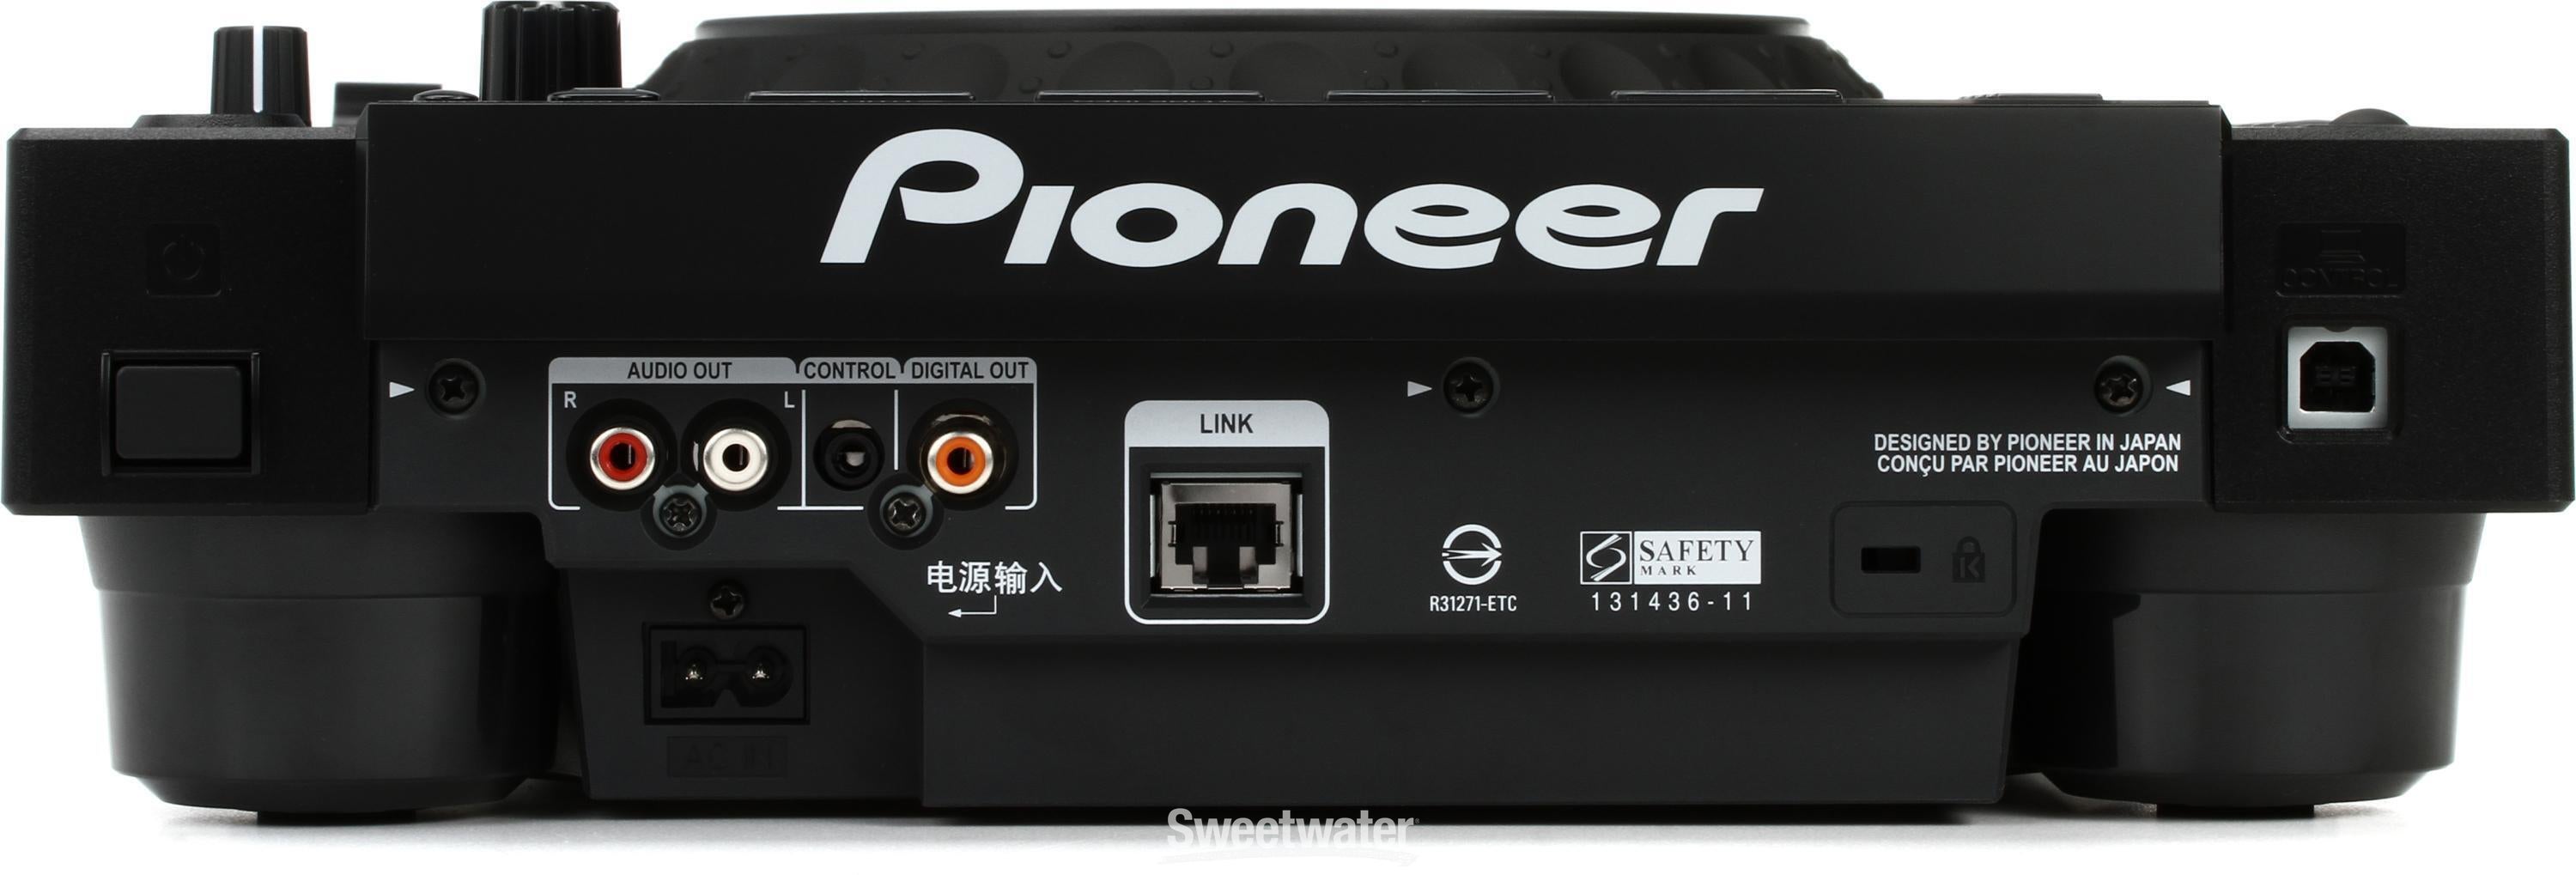 Pioneer DJ CDJ-900NXS Professional DJ Media Player | Sweetwater